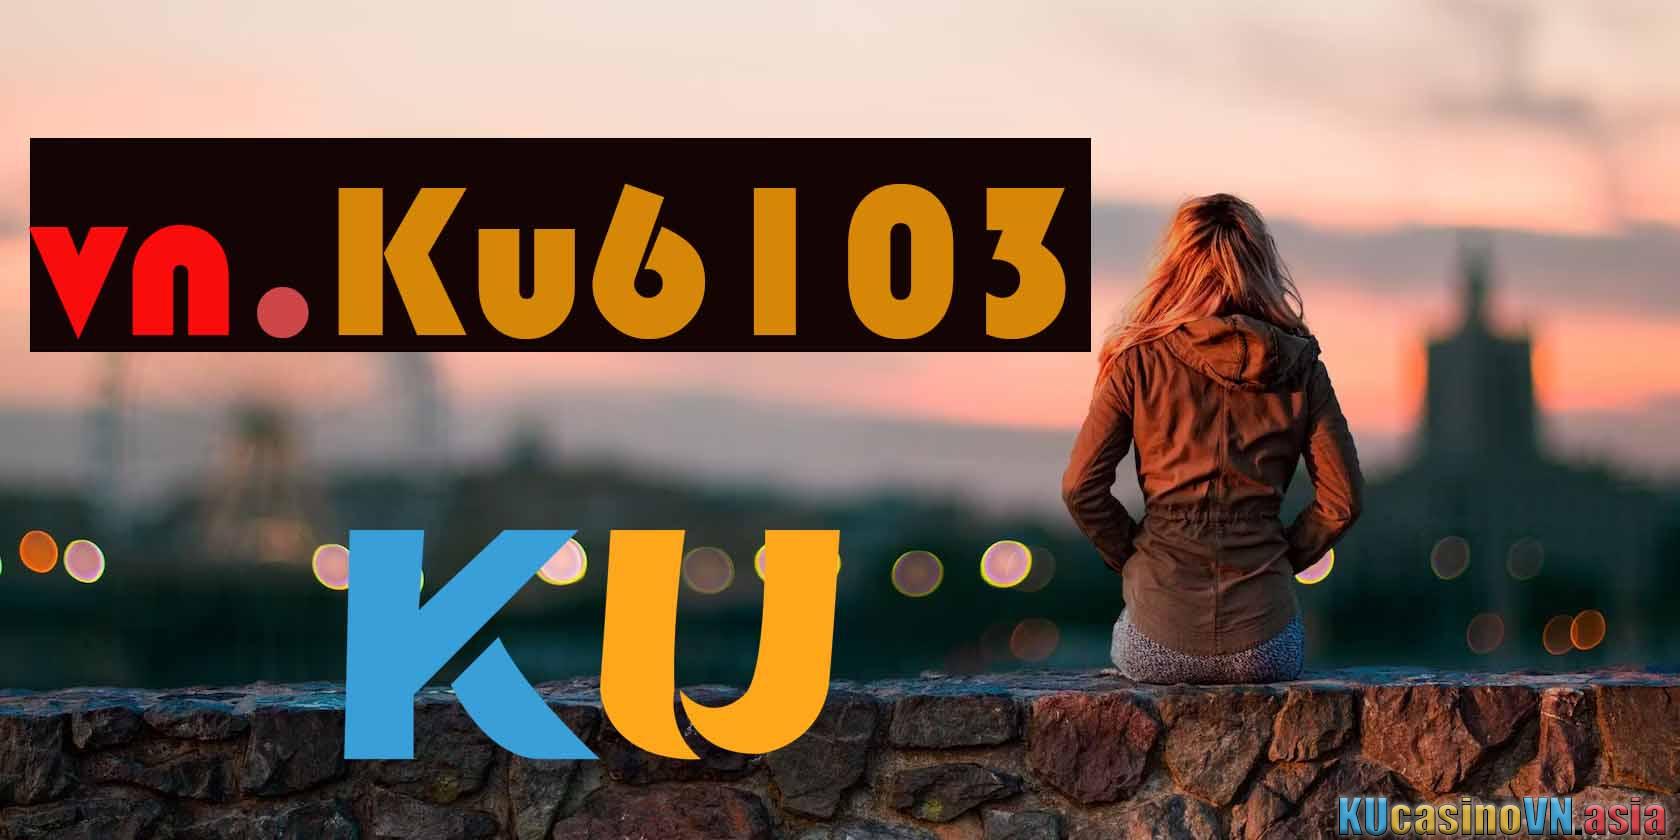 ku6103 net